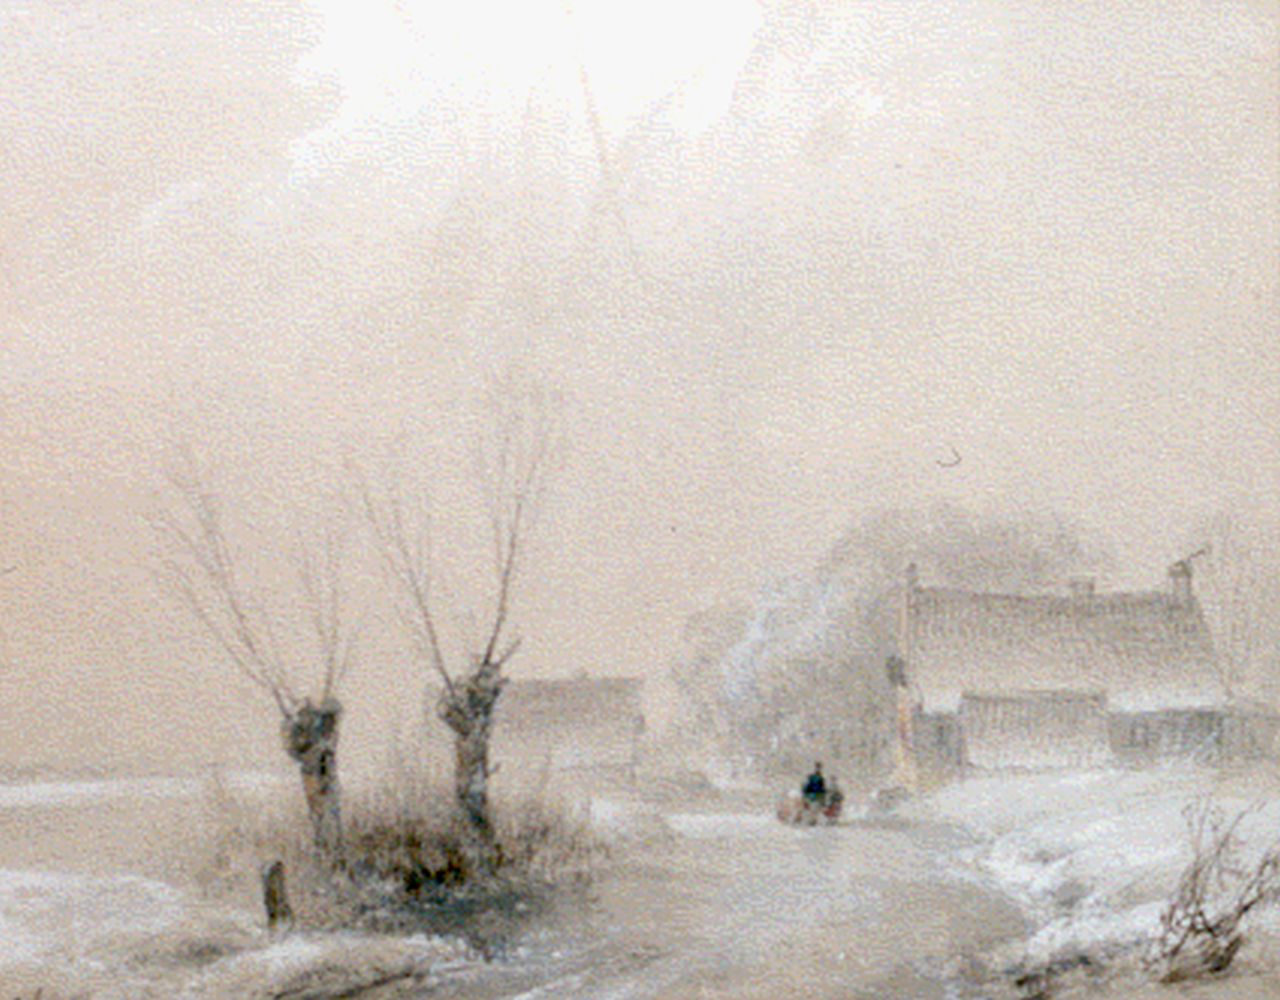 Schelfhout A.  | Andreas Schelfhout, A winter landscape, watercolour on paper 16.6 x 20.9 cm, signed l.l.